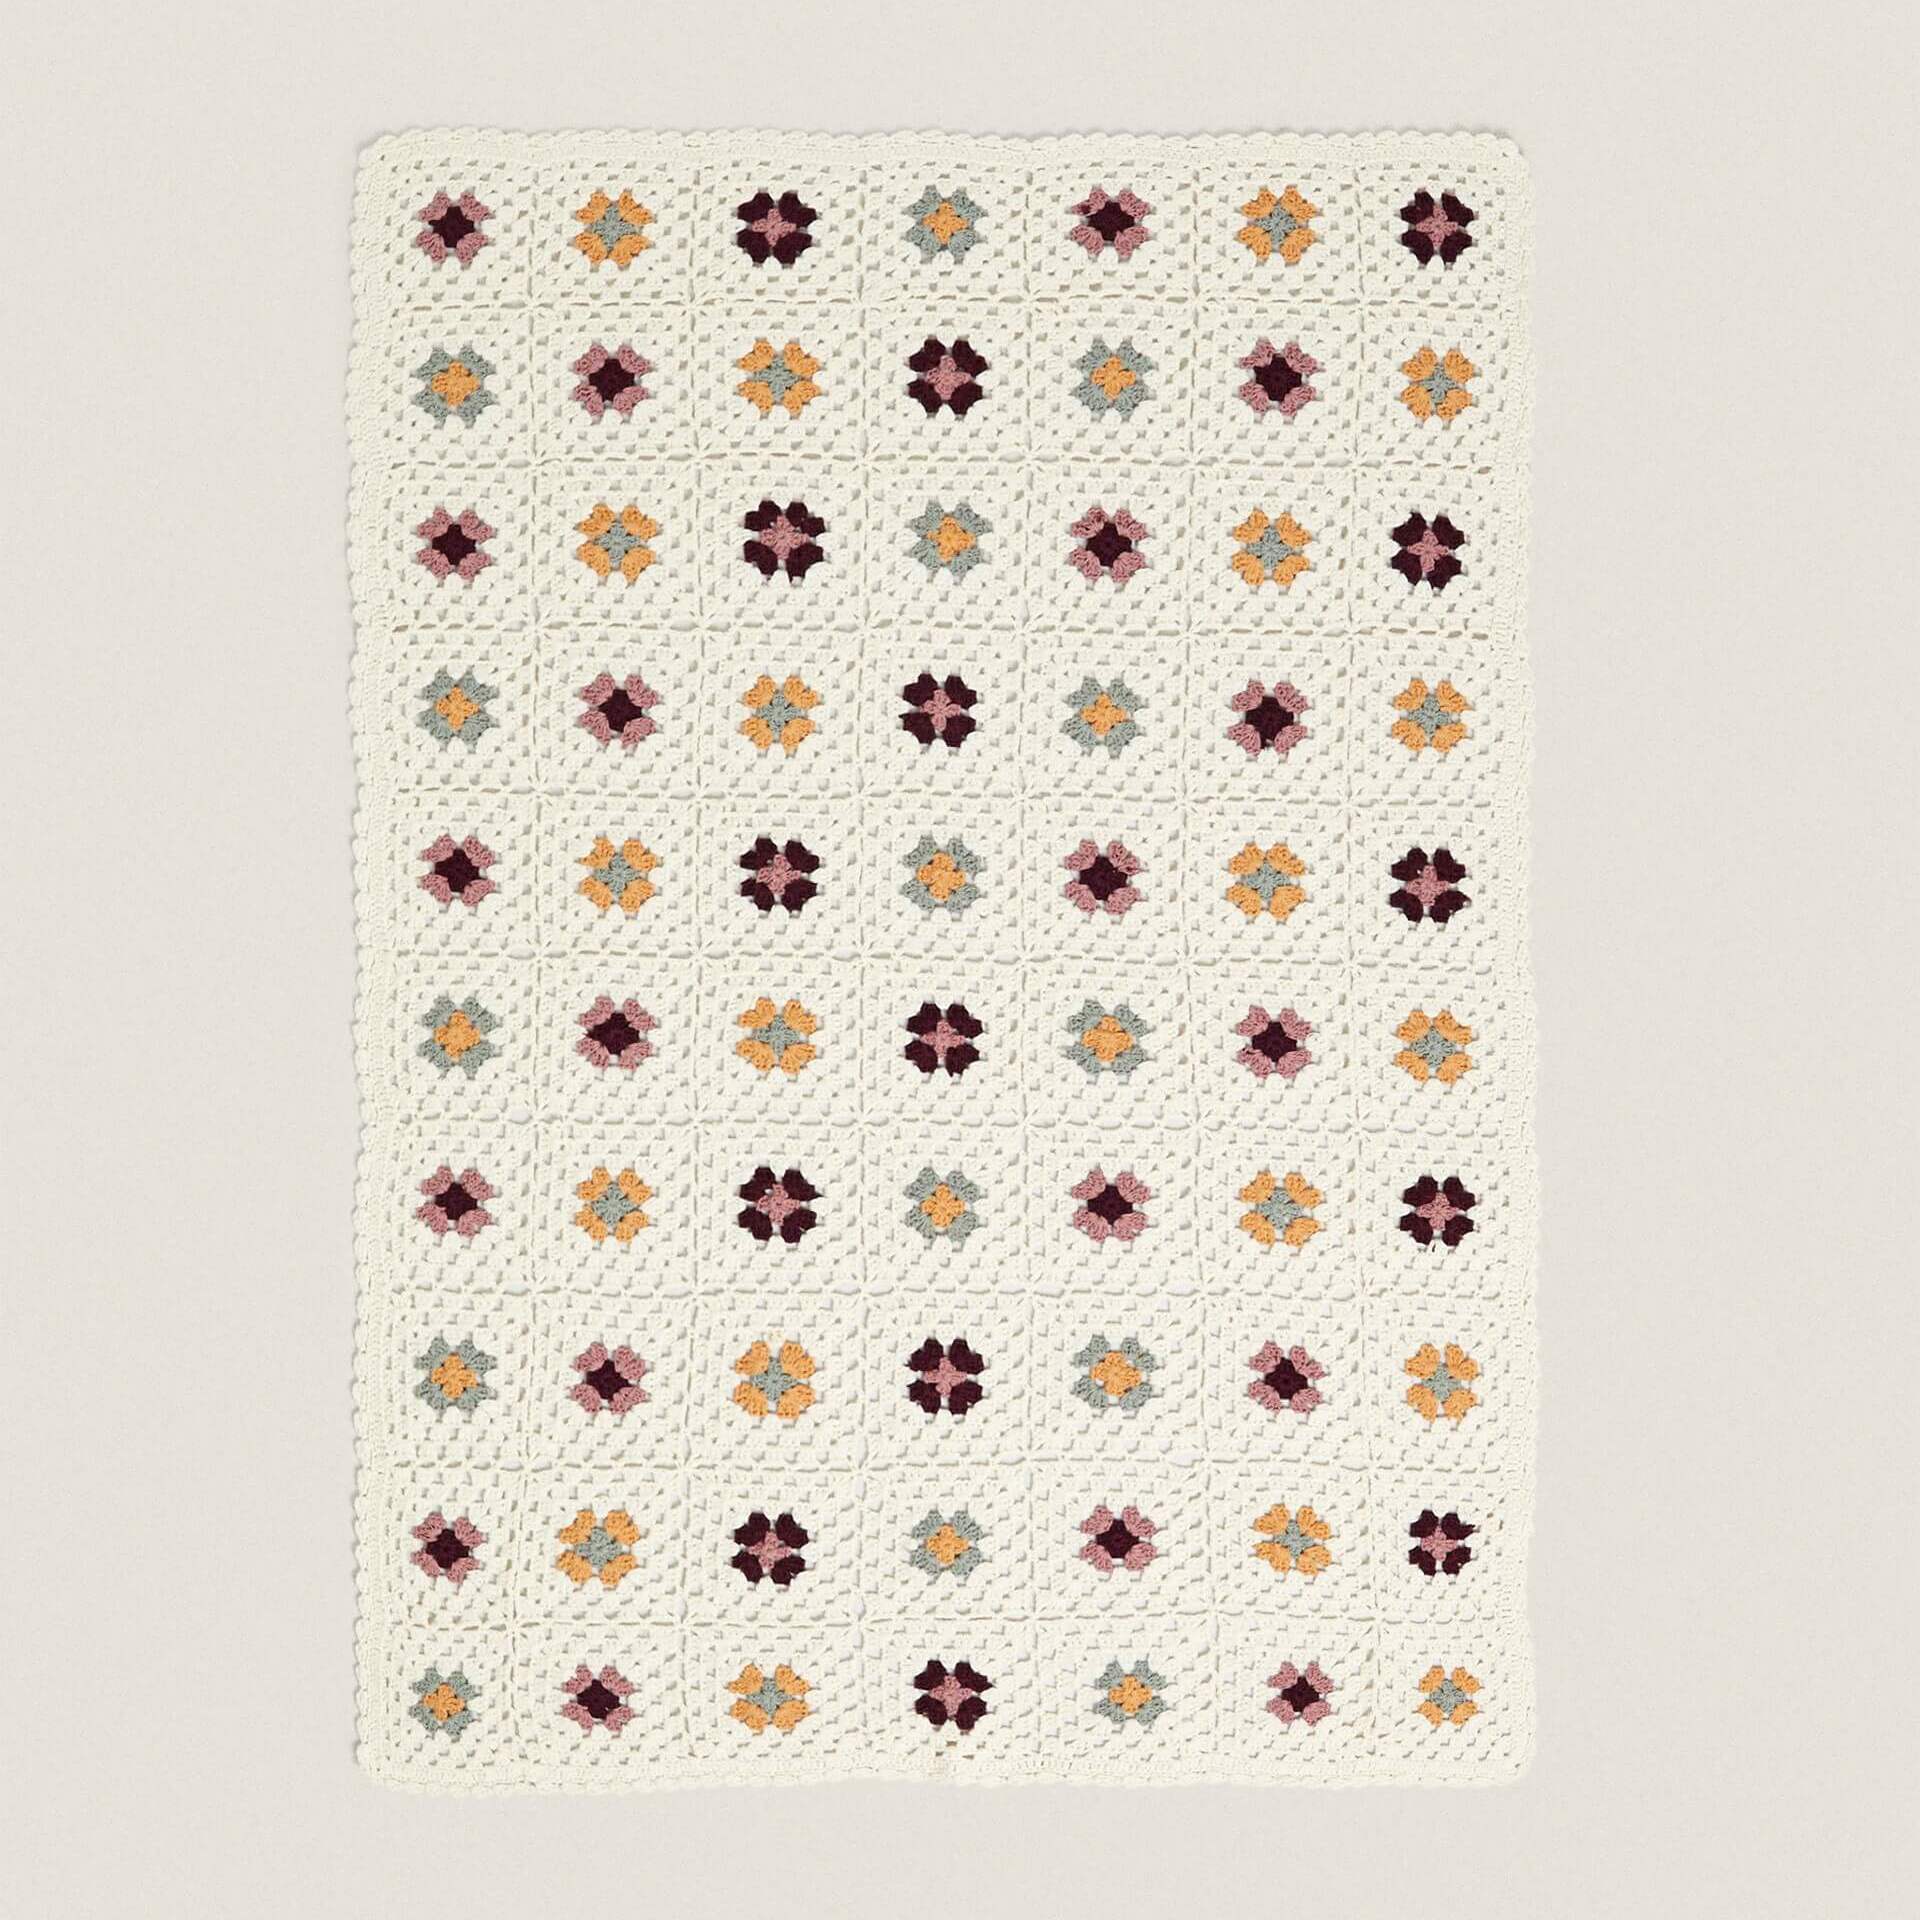 детское лоскутное одеяло вязаное крючком шерстяное детское одеяло размер 90 90 см Детское одеяло Zara Home Floral Crochet, белый